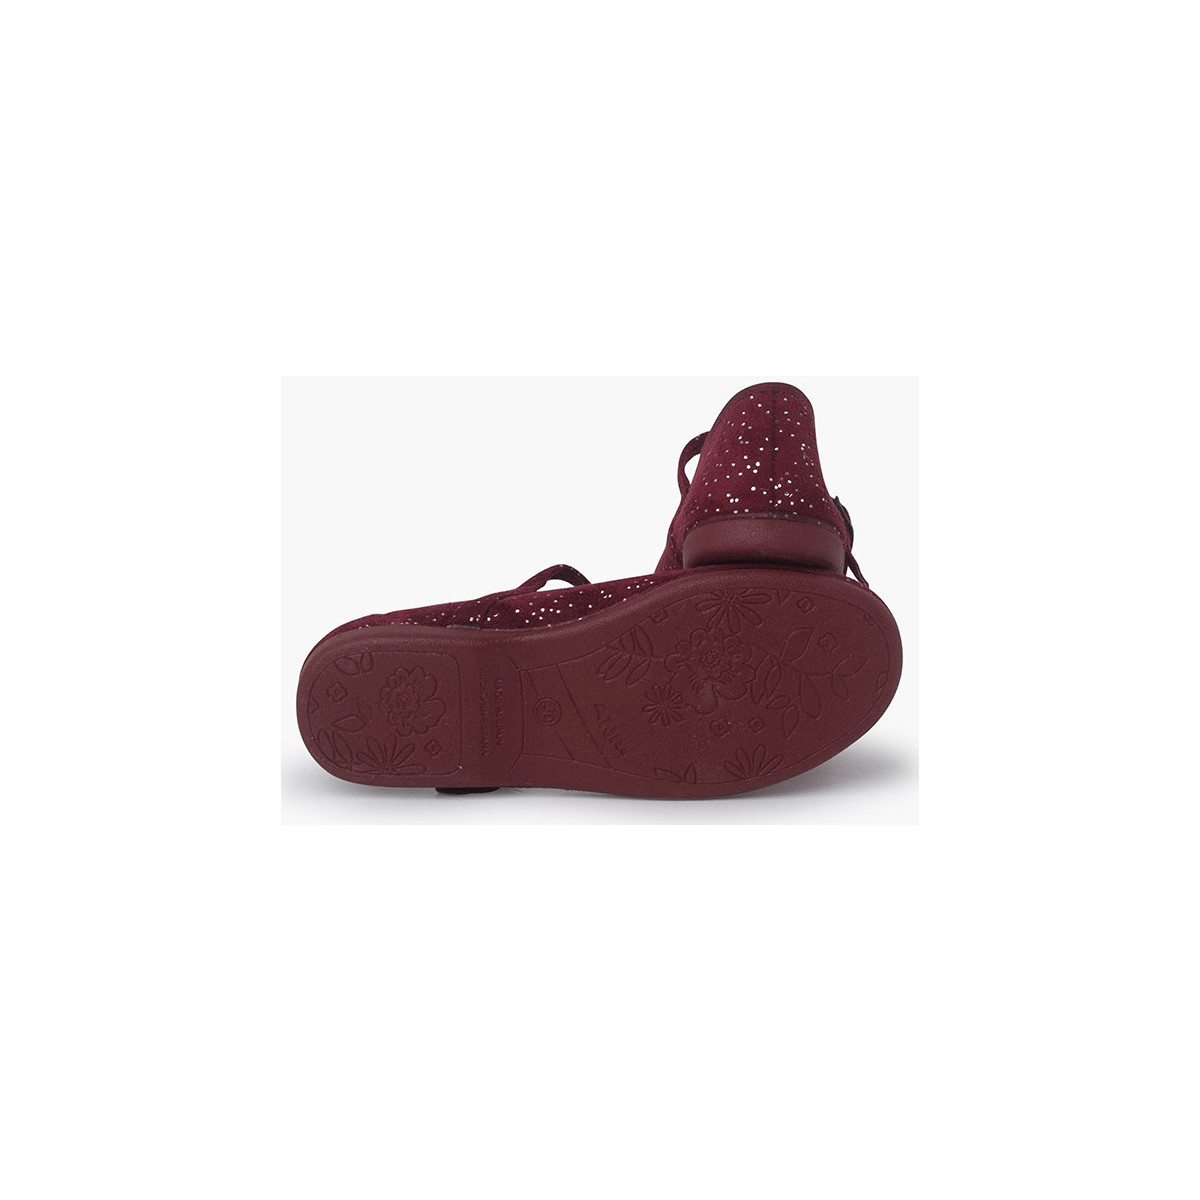 Pisamonas Bordeaux Chaussures babies à paillettes Fermeture à boucle dtdcZMzA